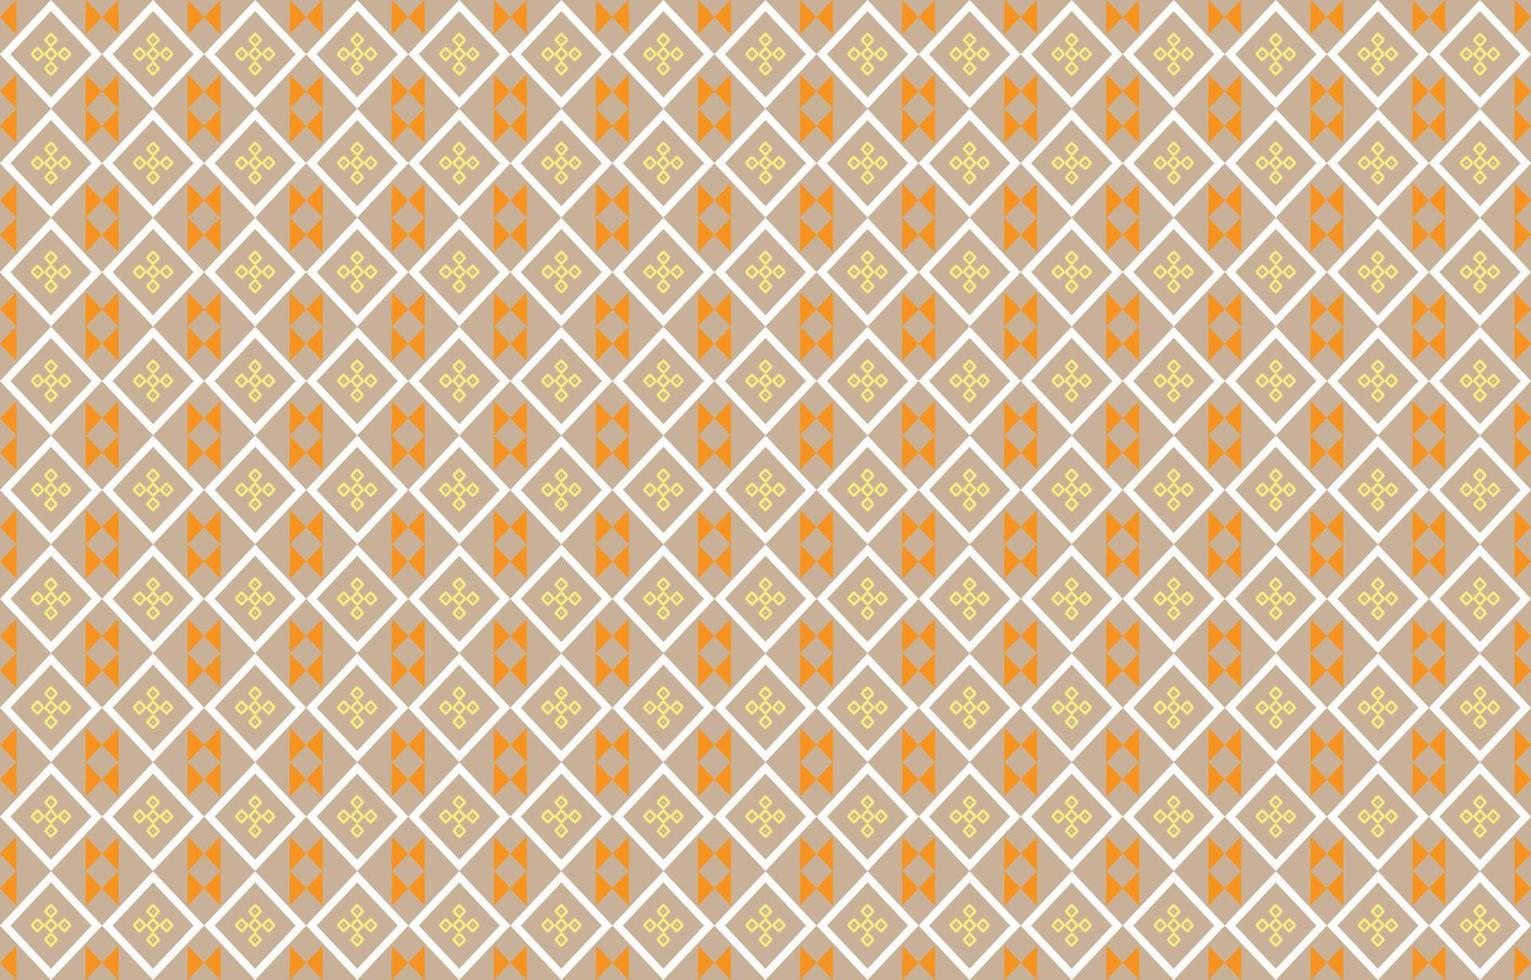 abstract meetkundig patroon, meetkundig etnisch oosters patroon traditioneel, ontwerp voor behang, stof, gordijn, tapijt, kleding, batik, inwikkeling, meetkundig vector illustratie, borduurwerk stijl.